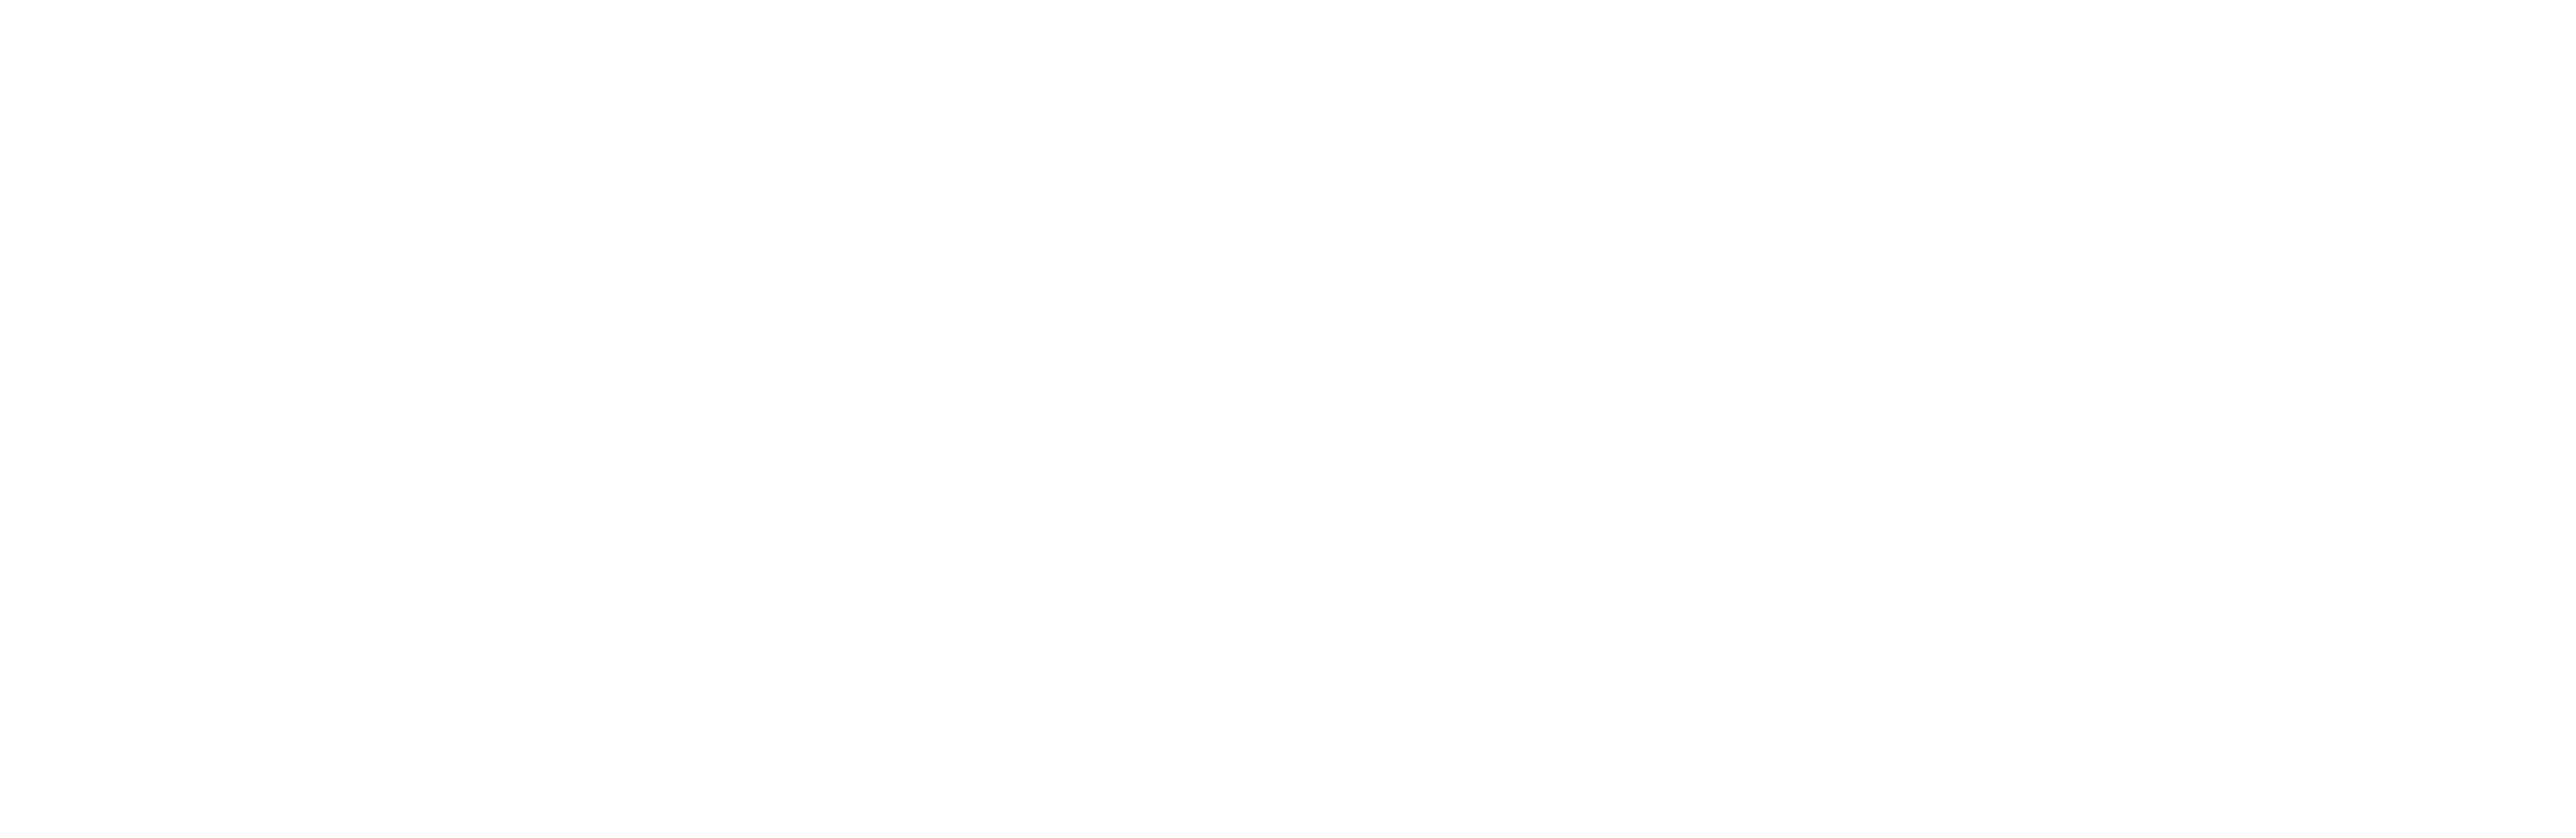 The Gerdau logo.